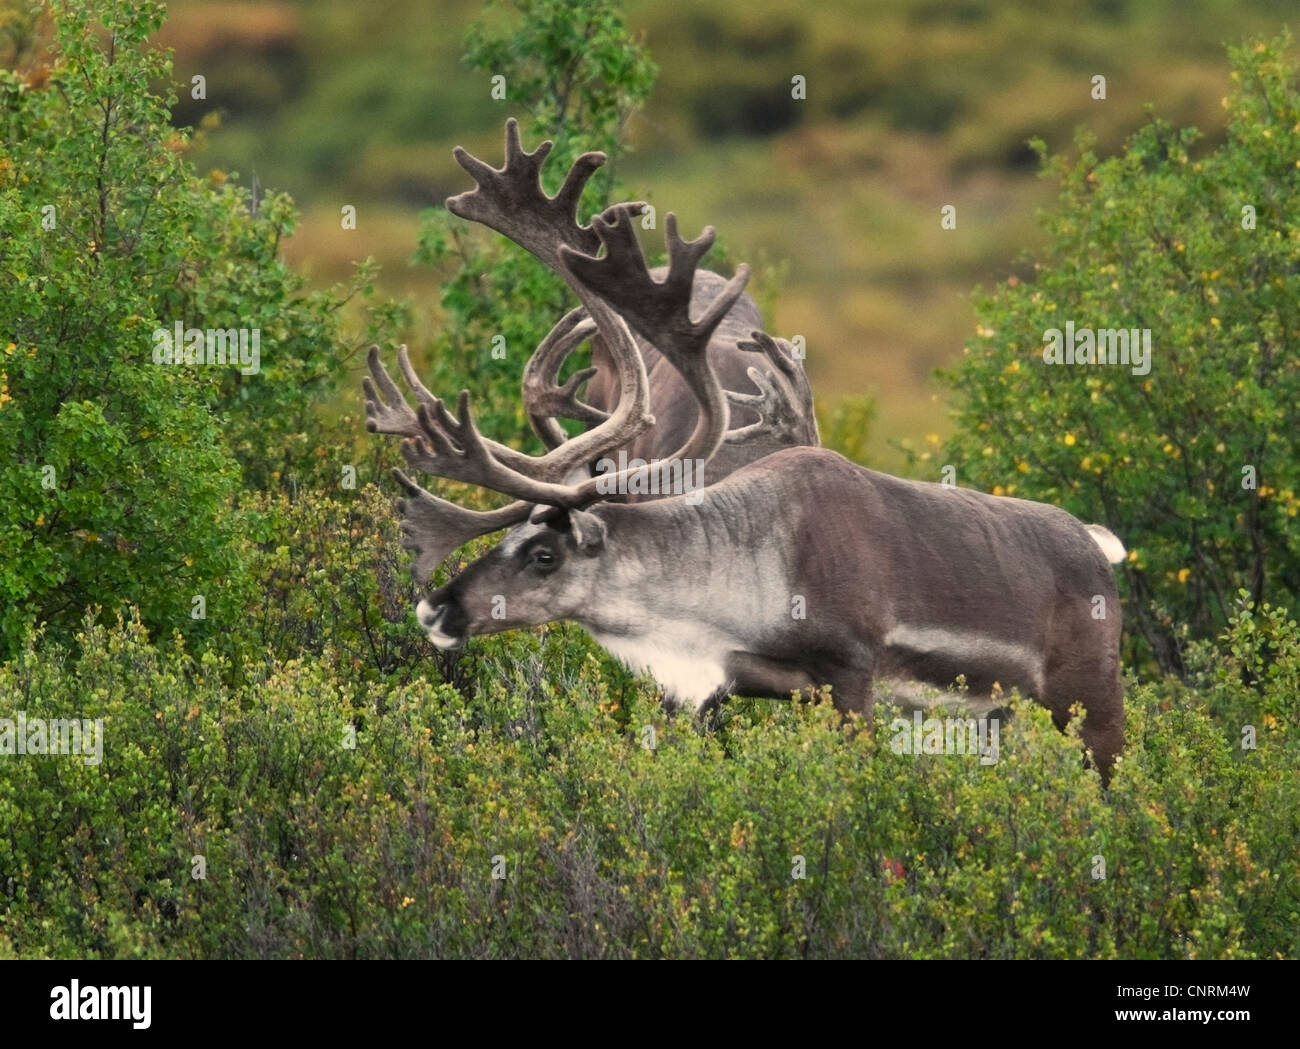 Caribou Bulls (Rangifer tarandus) with antlers in velvet feed on vegetation during the summer months in Alaska Stock Photo